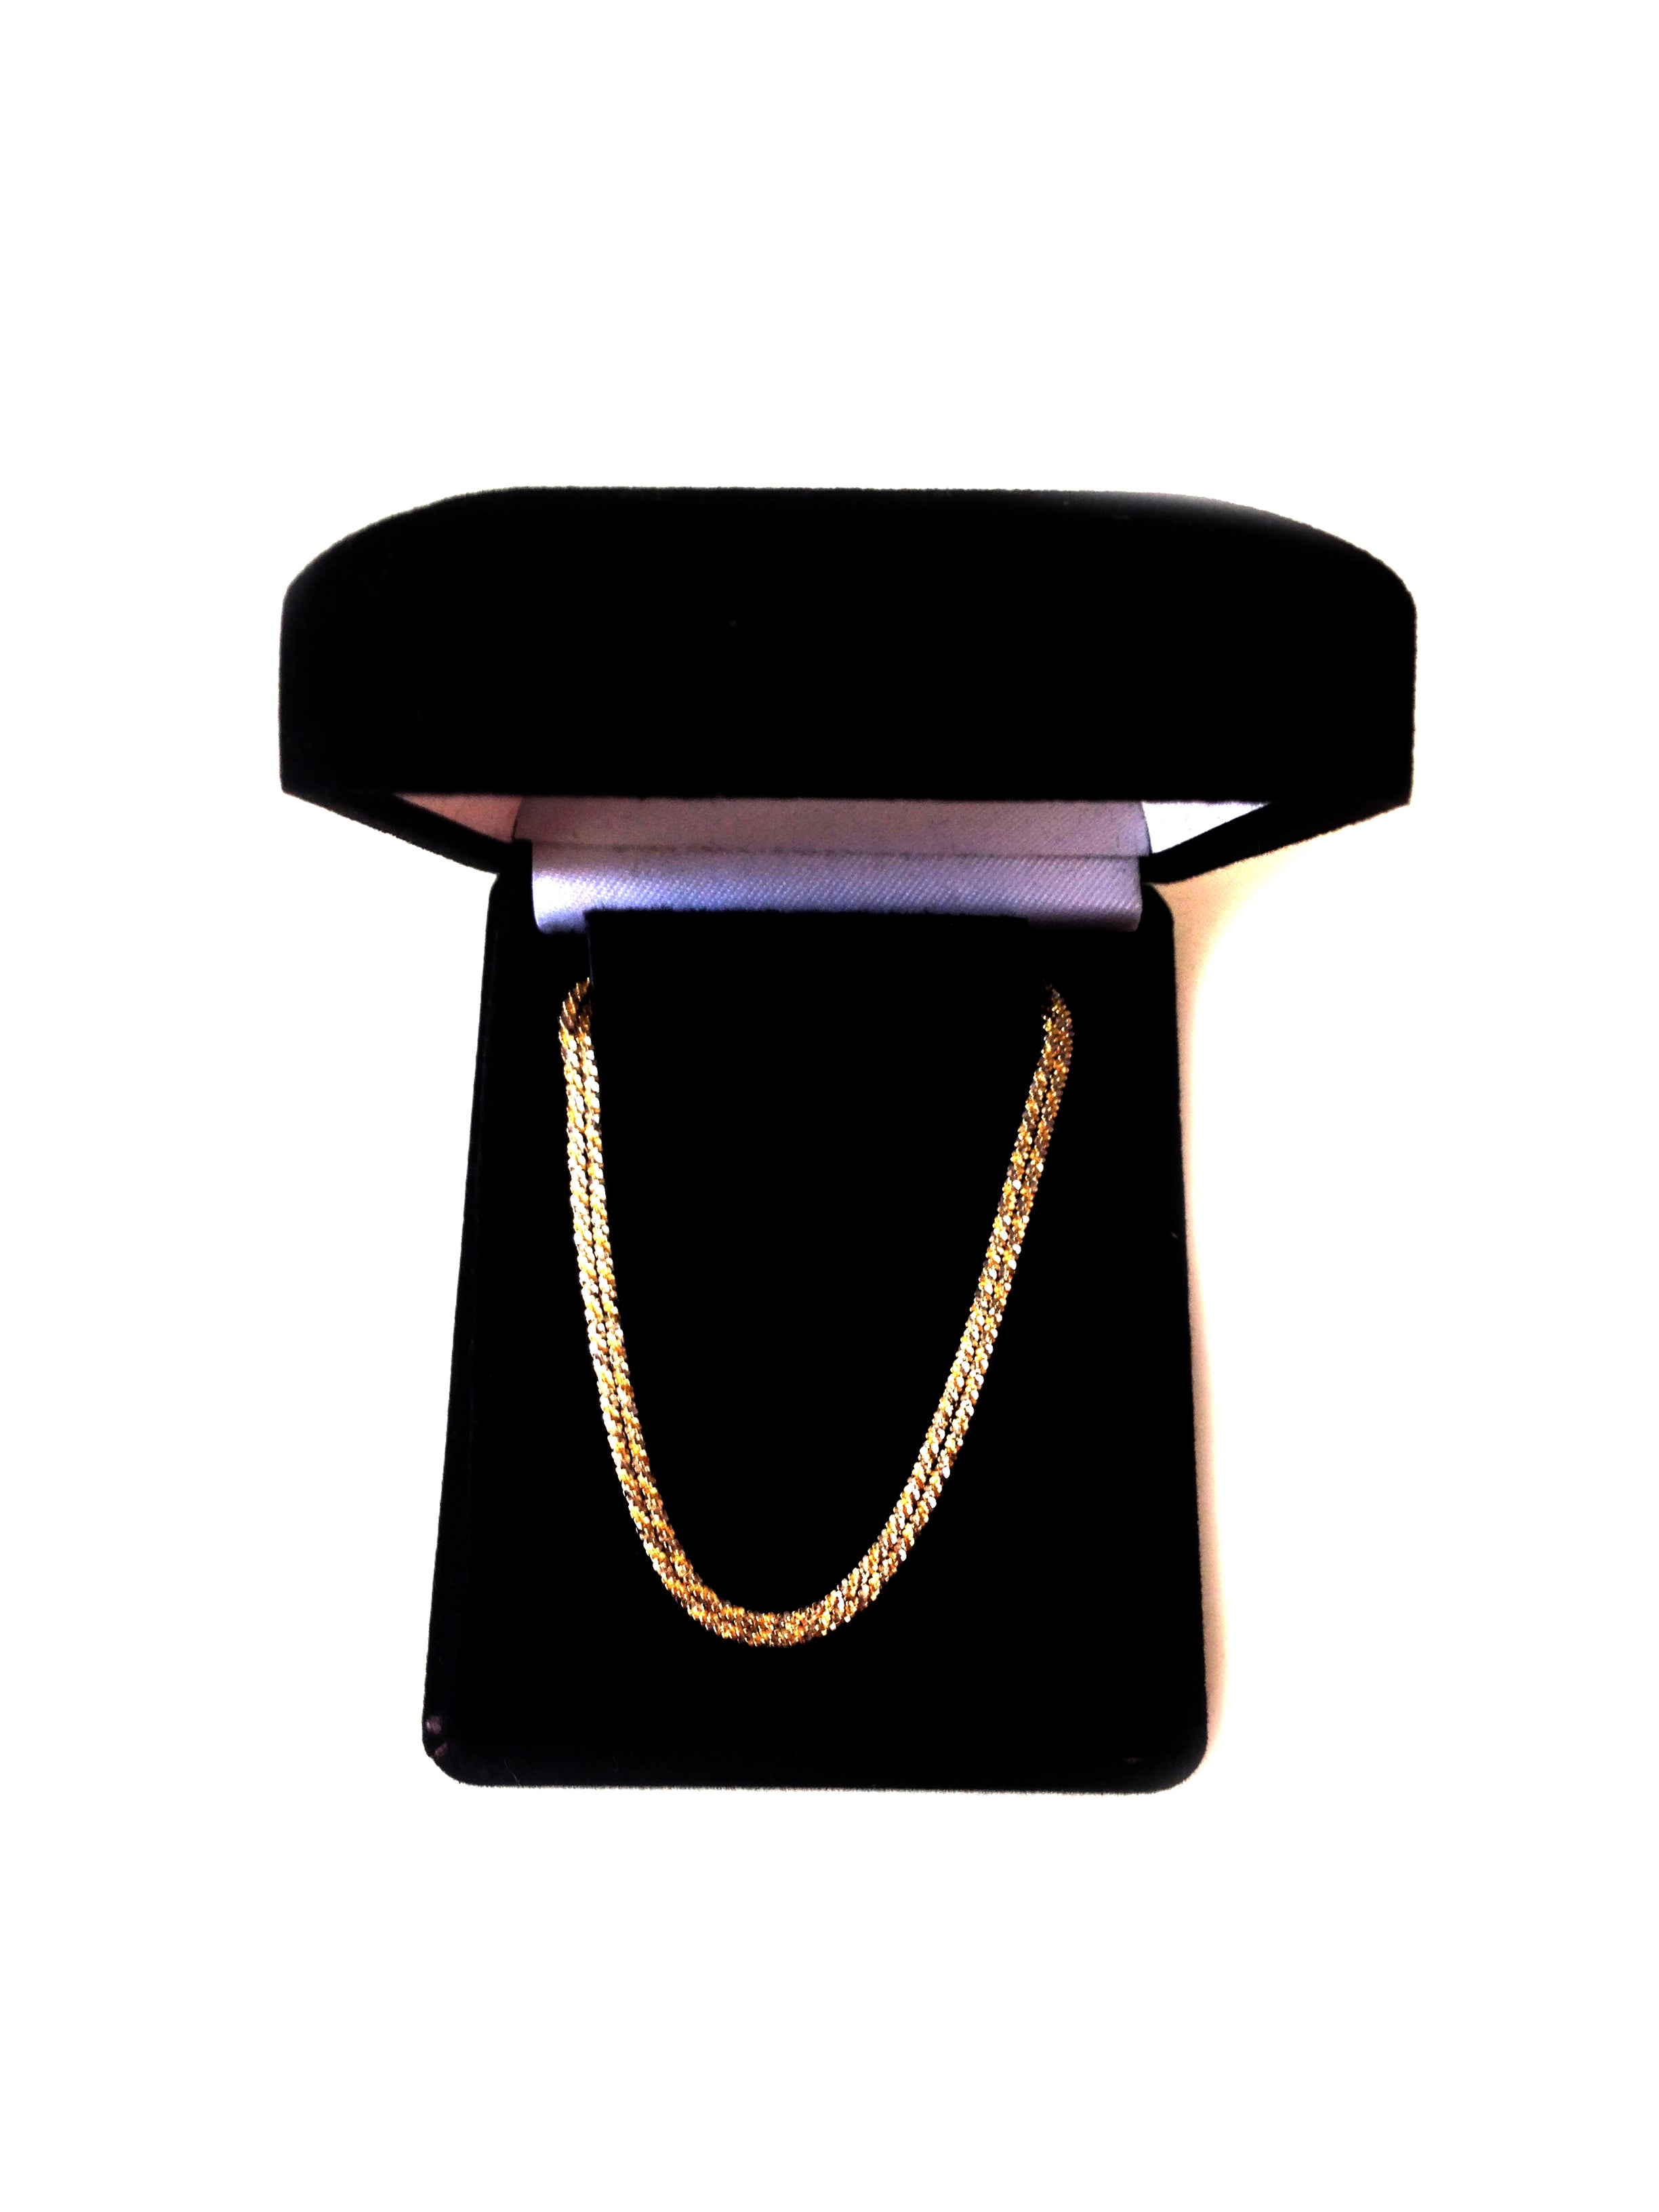 14k 2 tone gul og hvid guld sparkle kæde halskæde, 1,5 mm fine designer smykker til mænd og kvinder